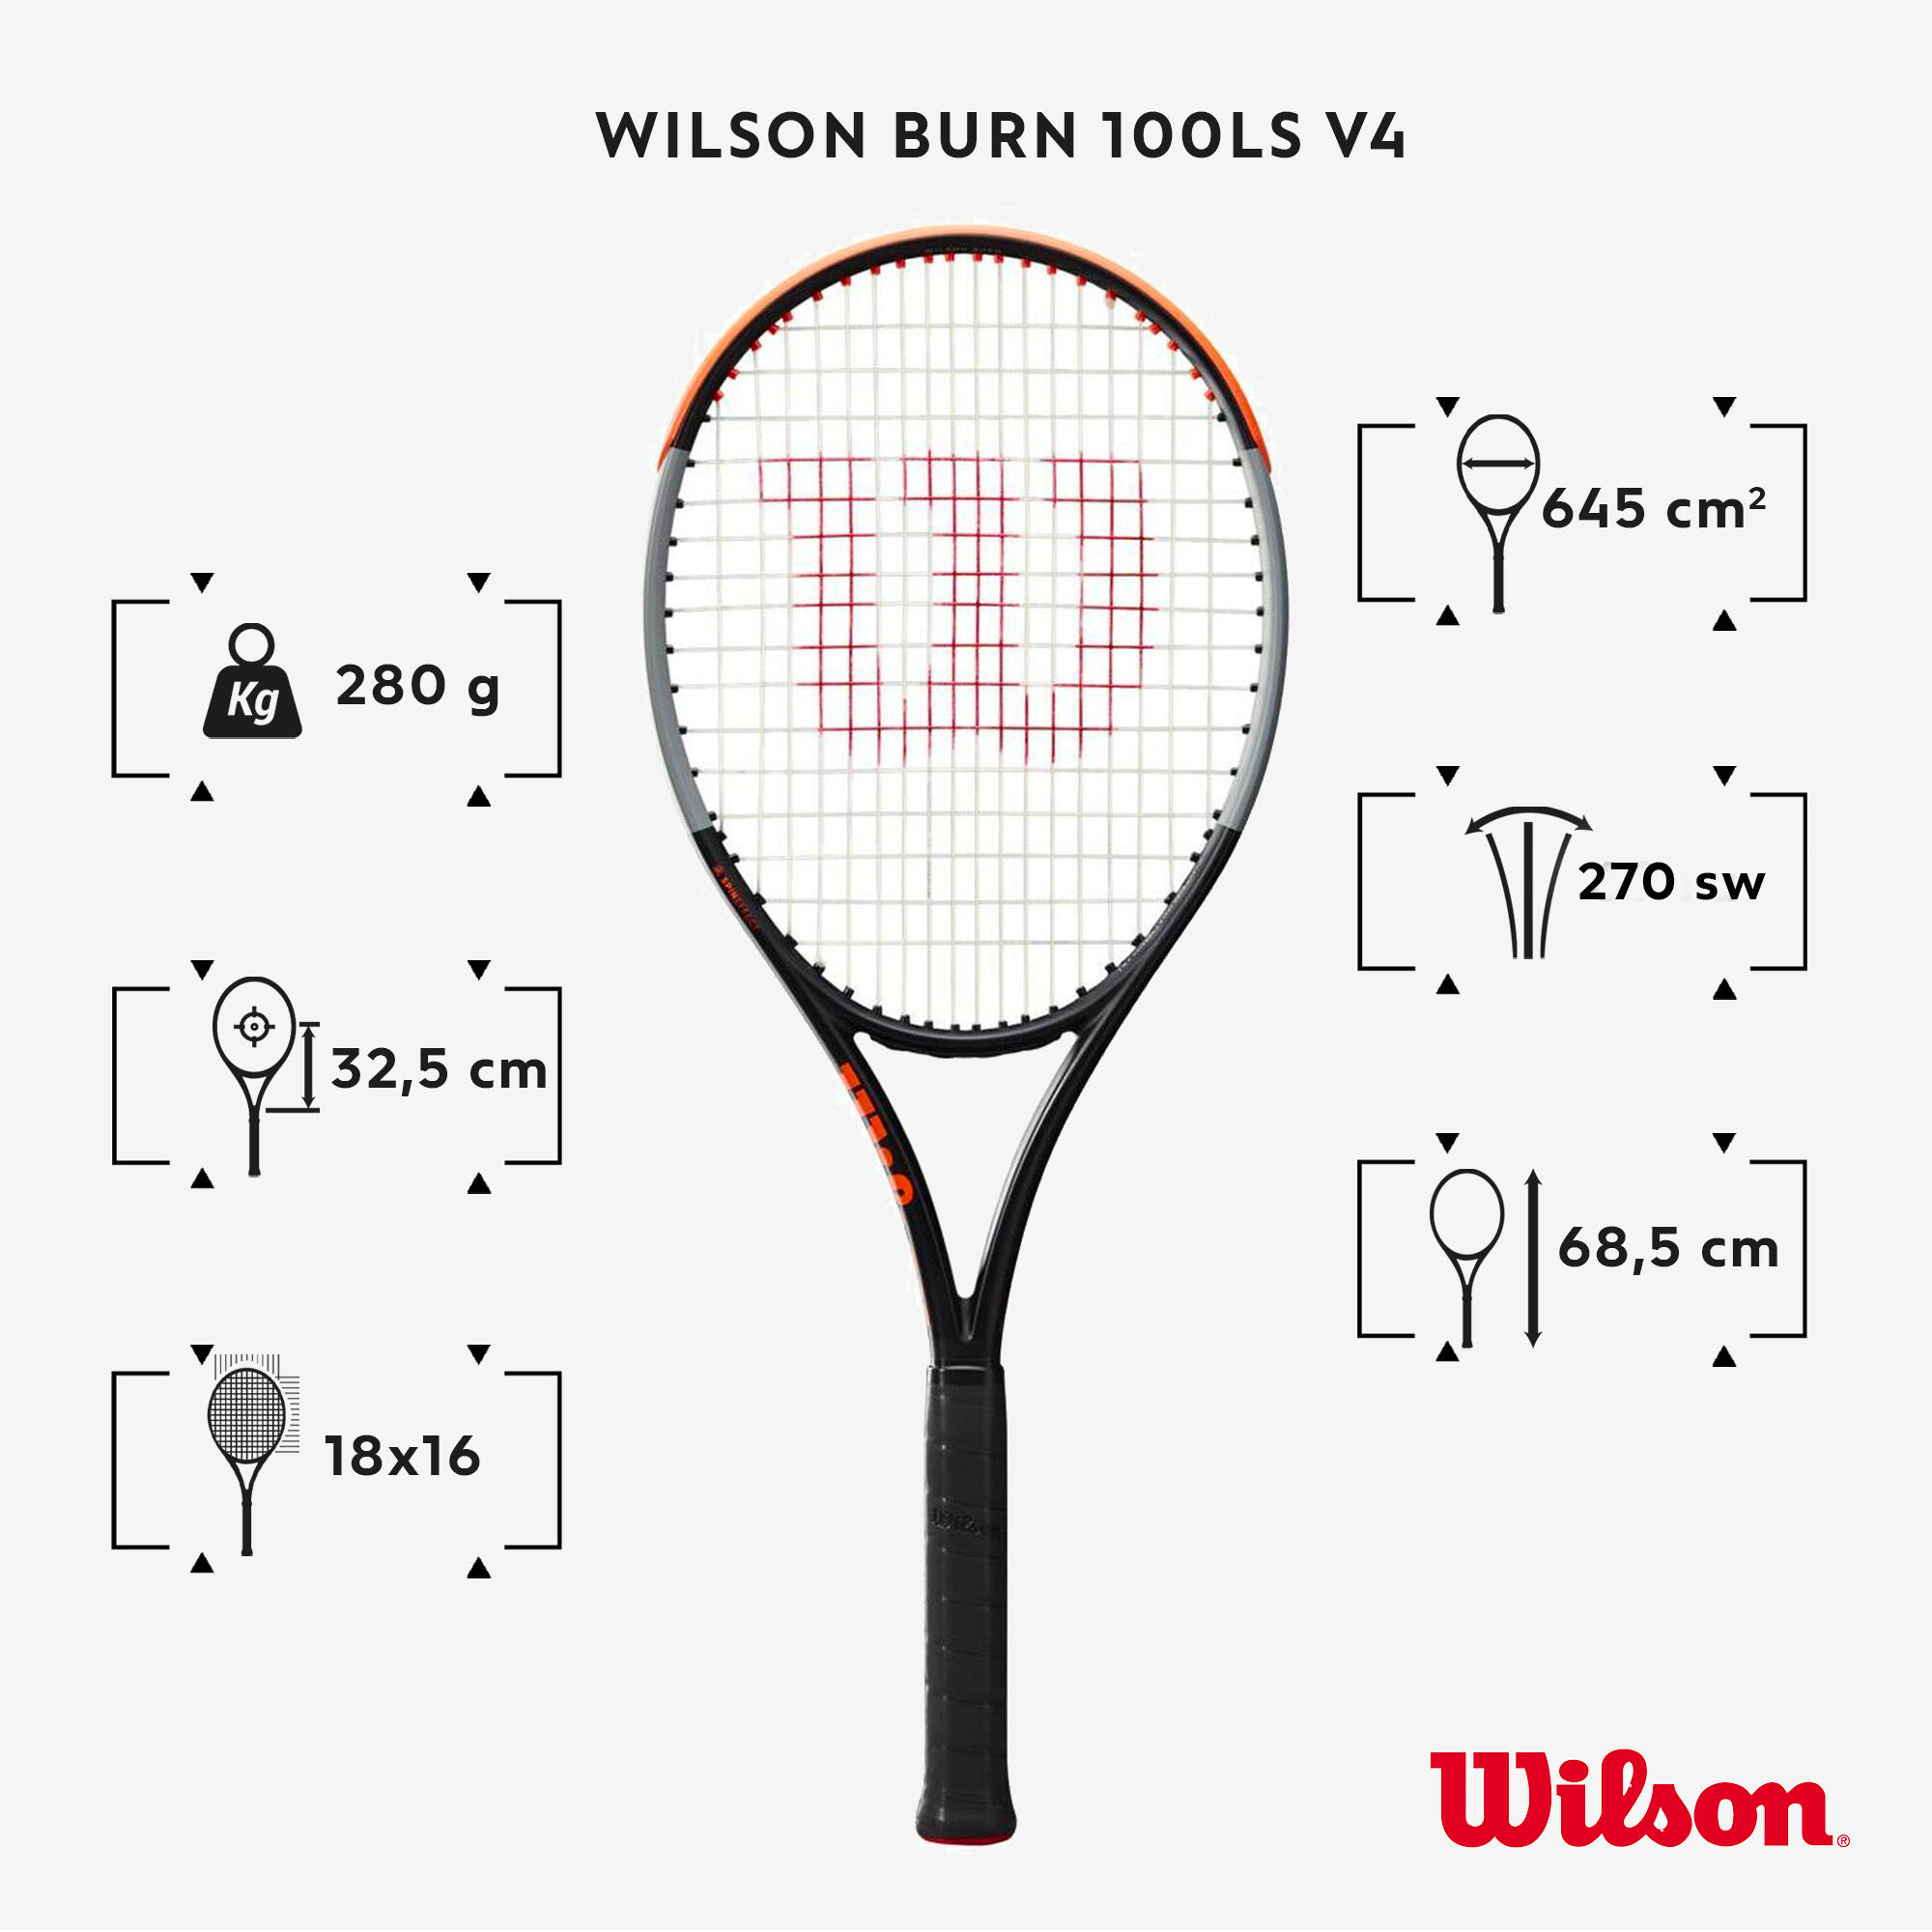 Adult Tennis Racket Burn 100LS V4 280 g - Black/Orange 2/8